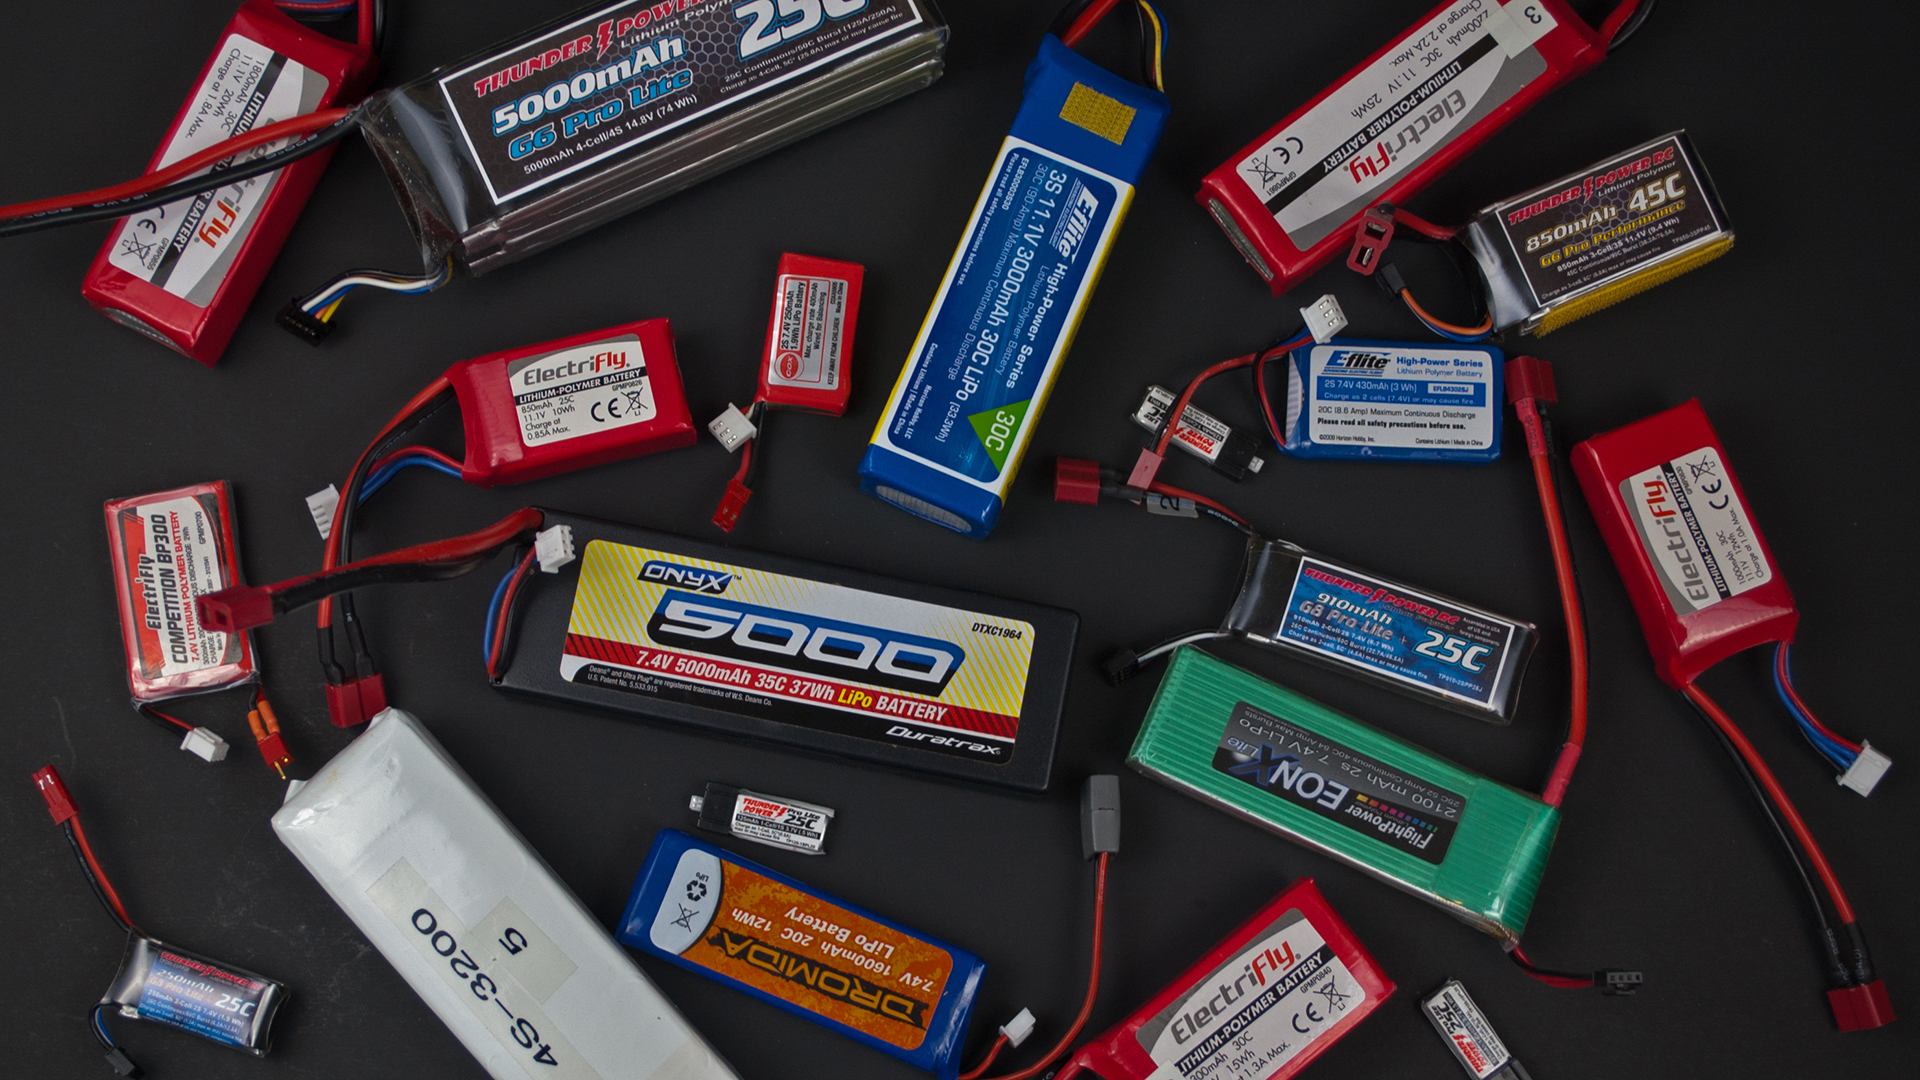 rc batteries